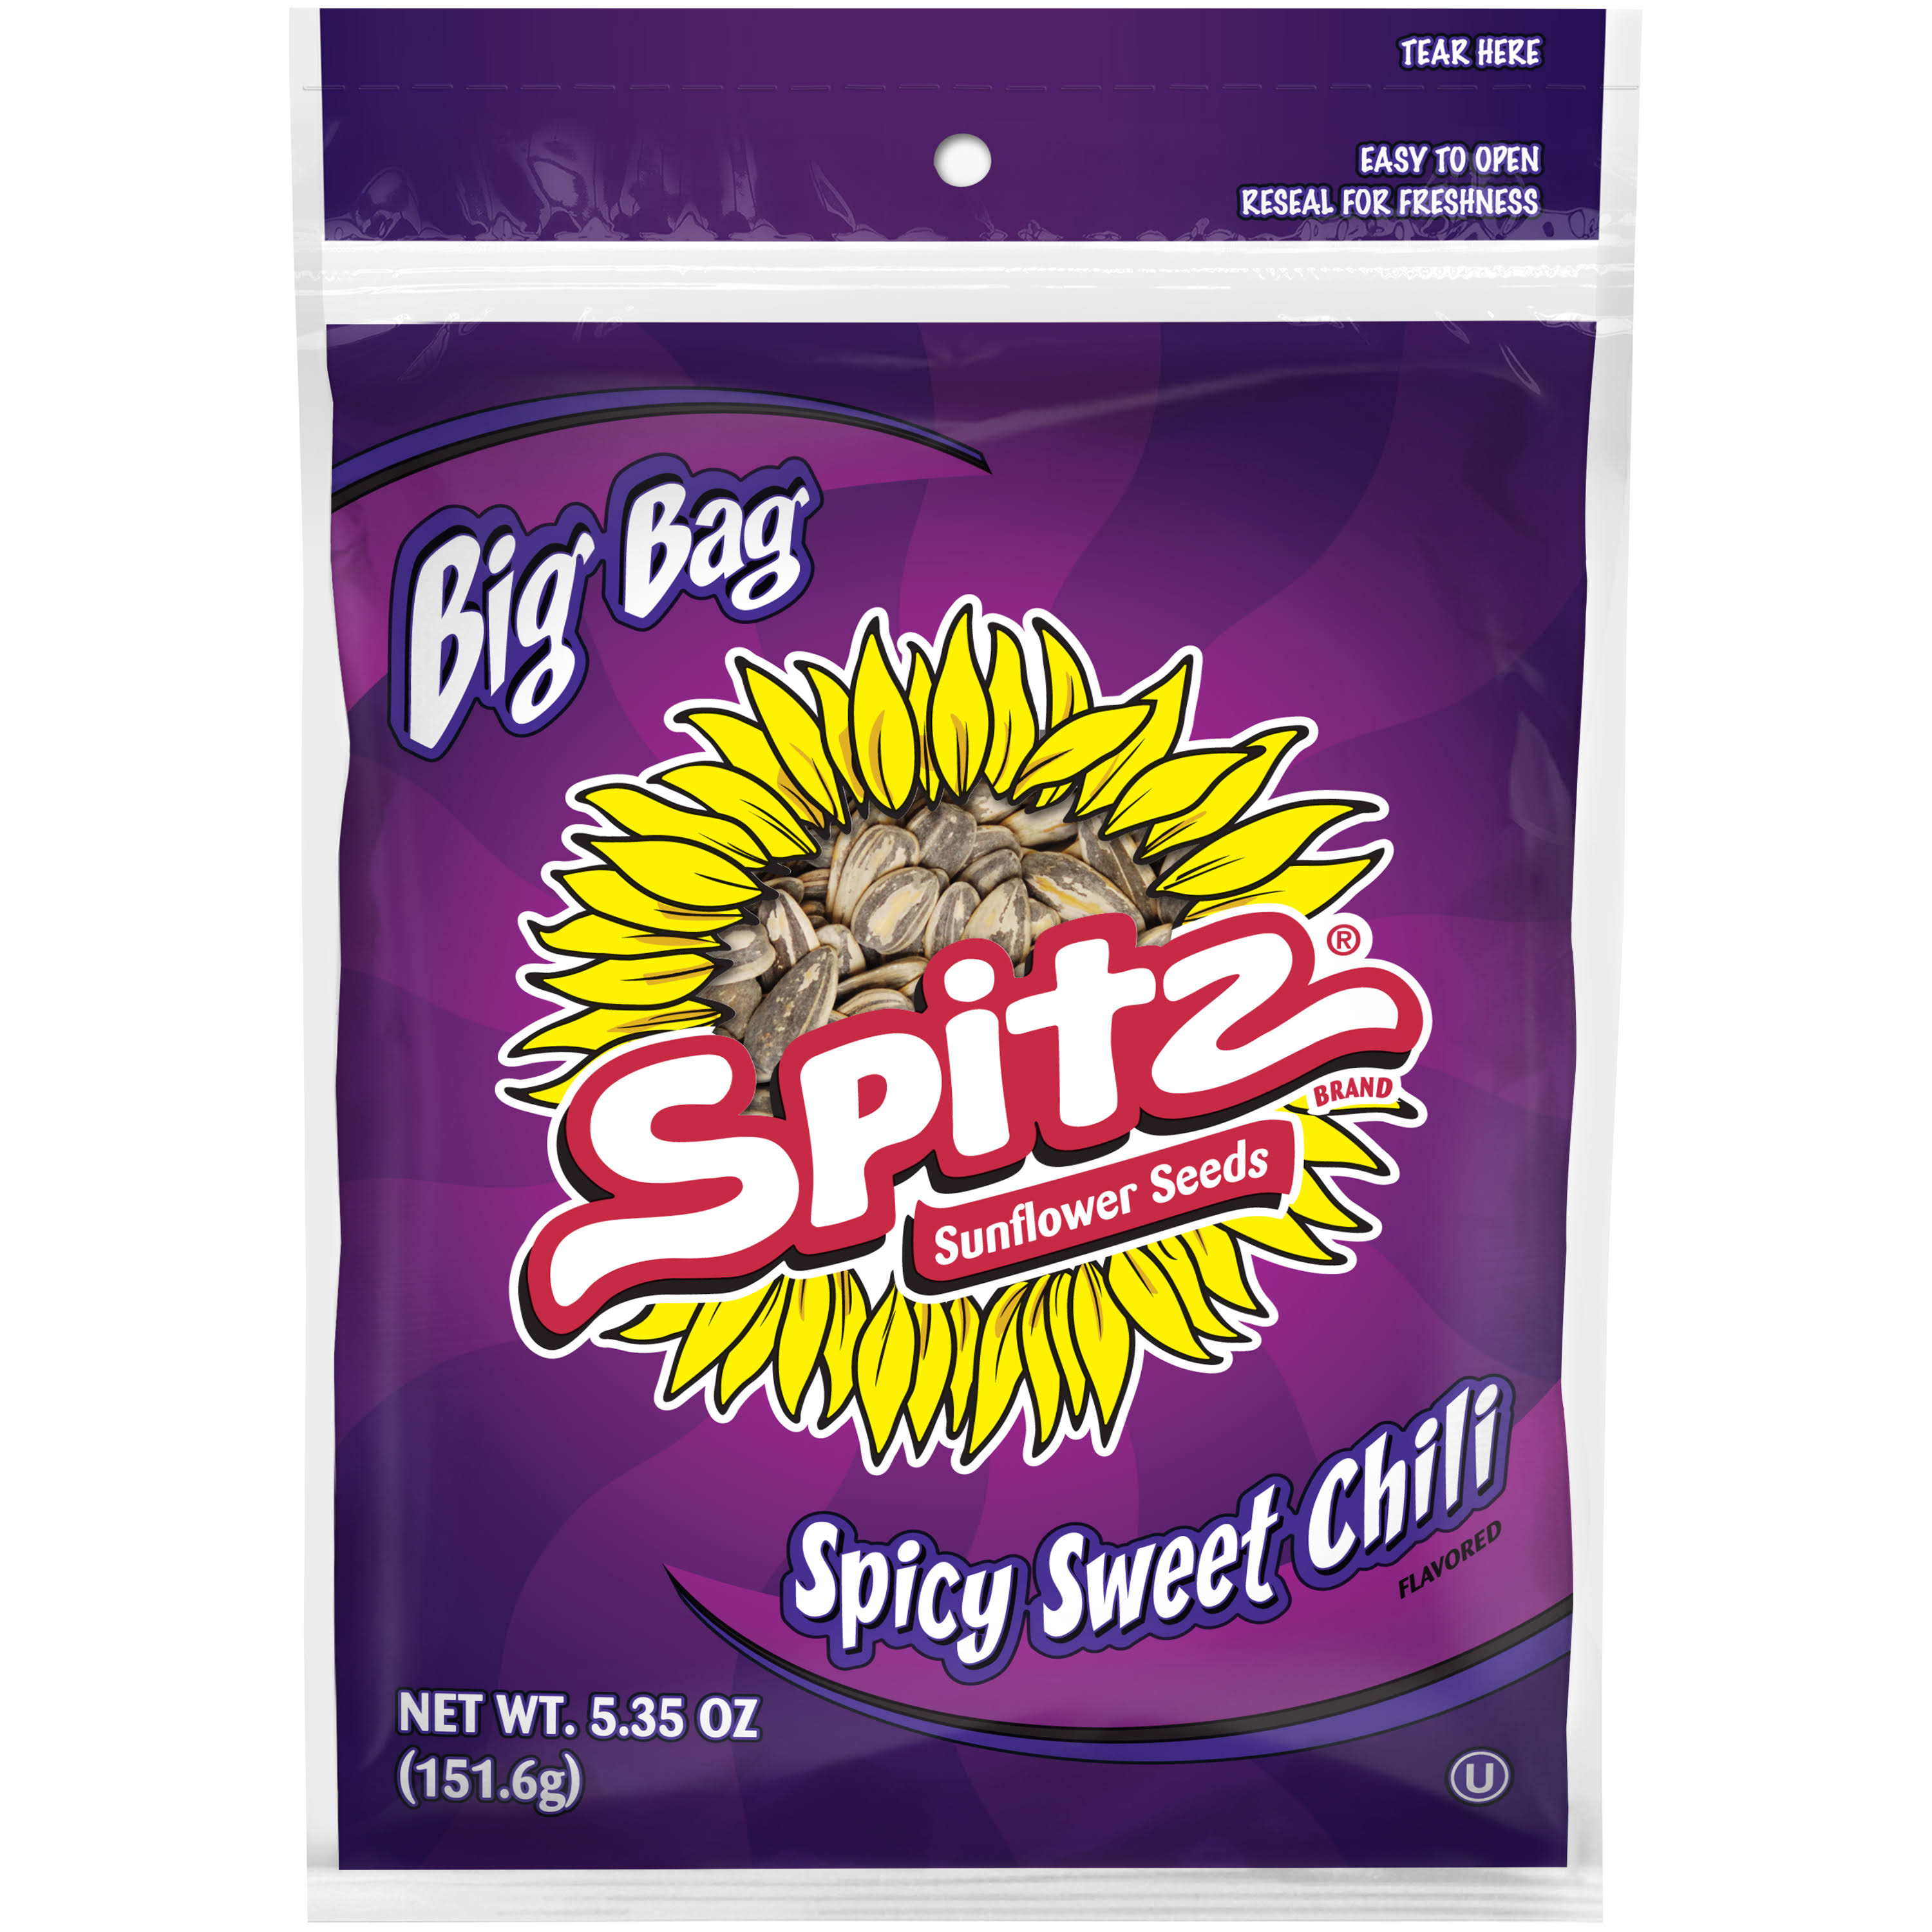 Splitz Sunflower Seeds - Spicy Sweet Chili